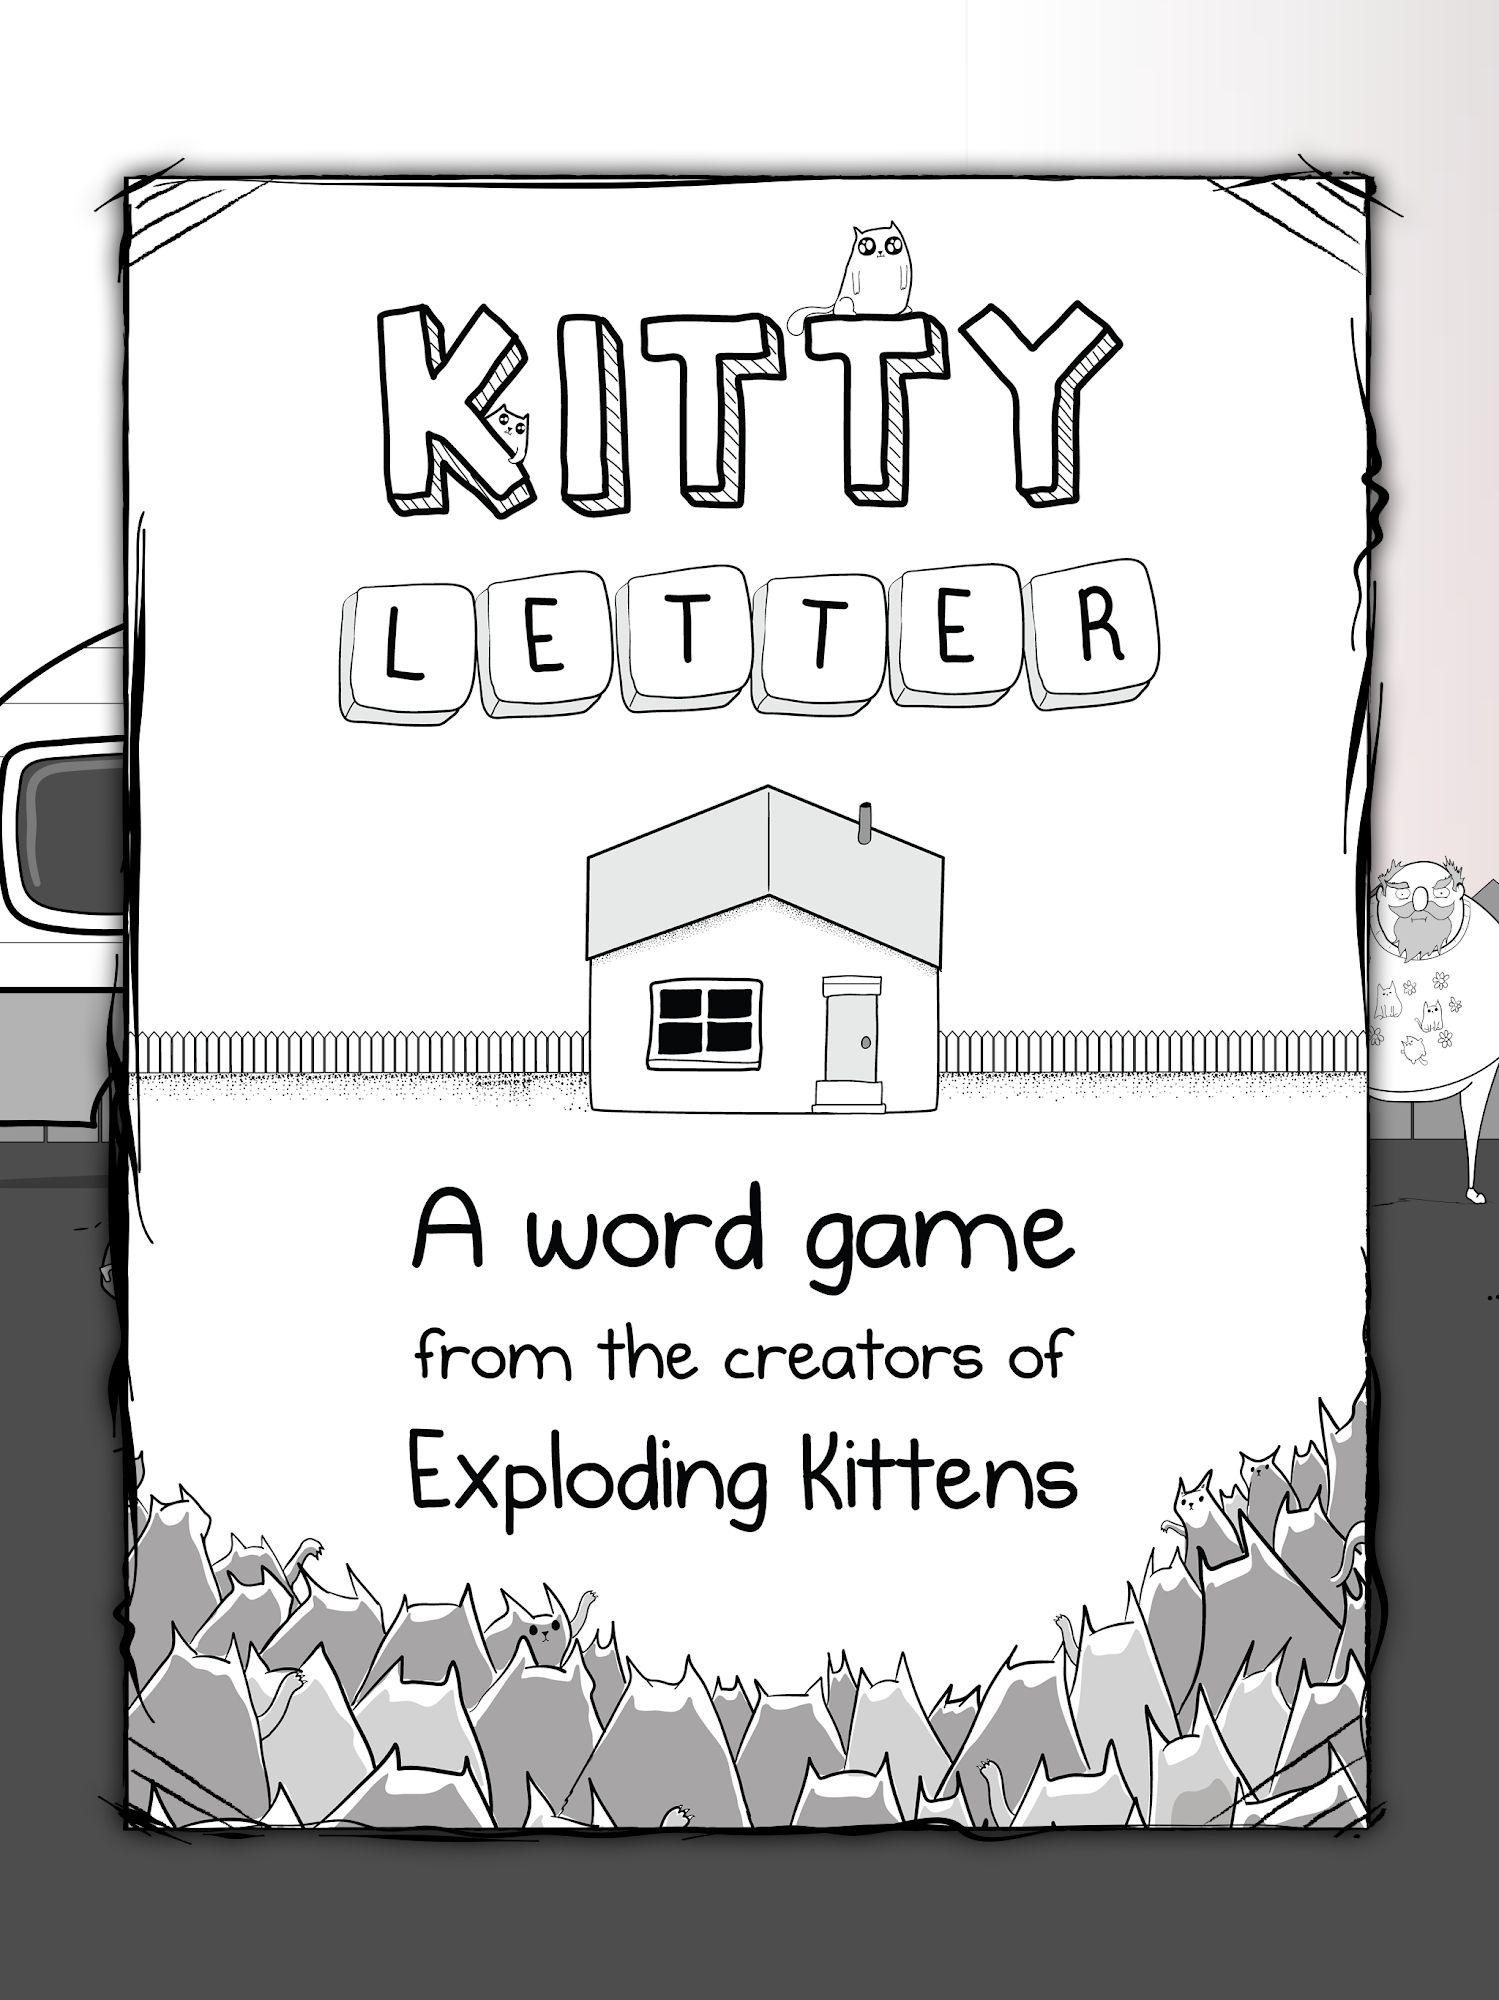 Download Kitty Letter für Android kostenlos.